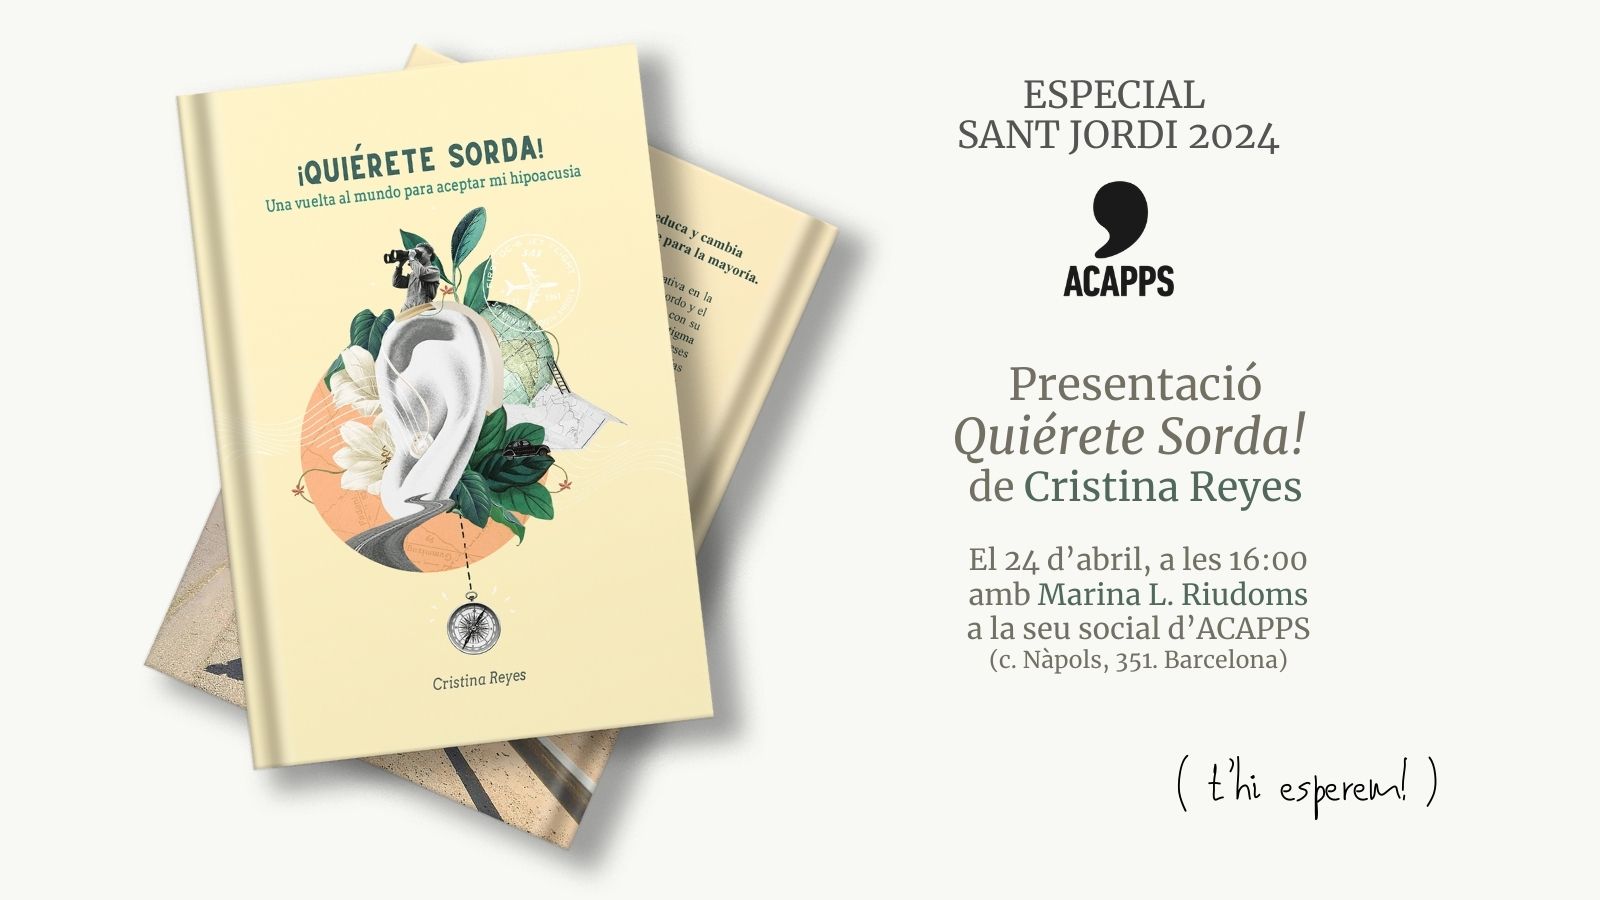 Especial Sant Jordi. Cristina Reyes, escriptora amb sordesa, presentarà el seu llibre “Quiérete sorda” a ACAPPS